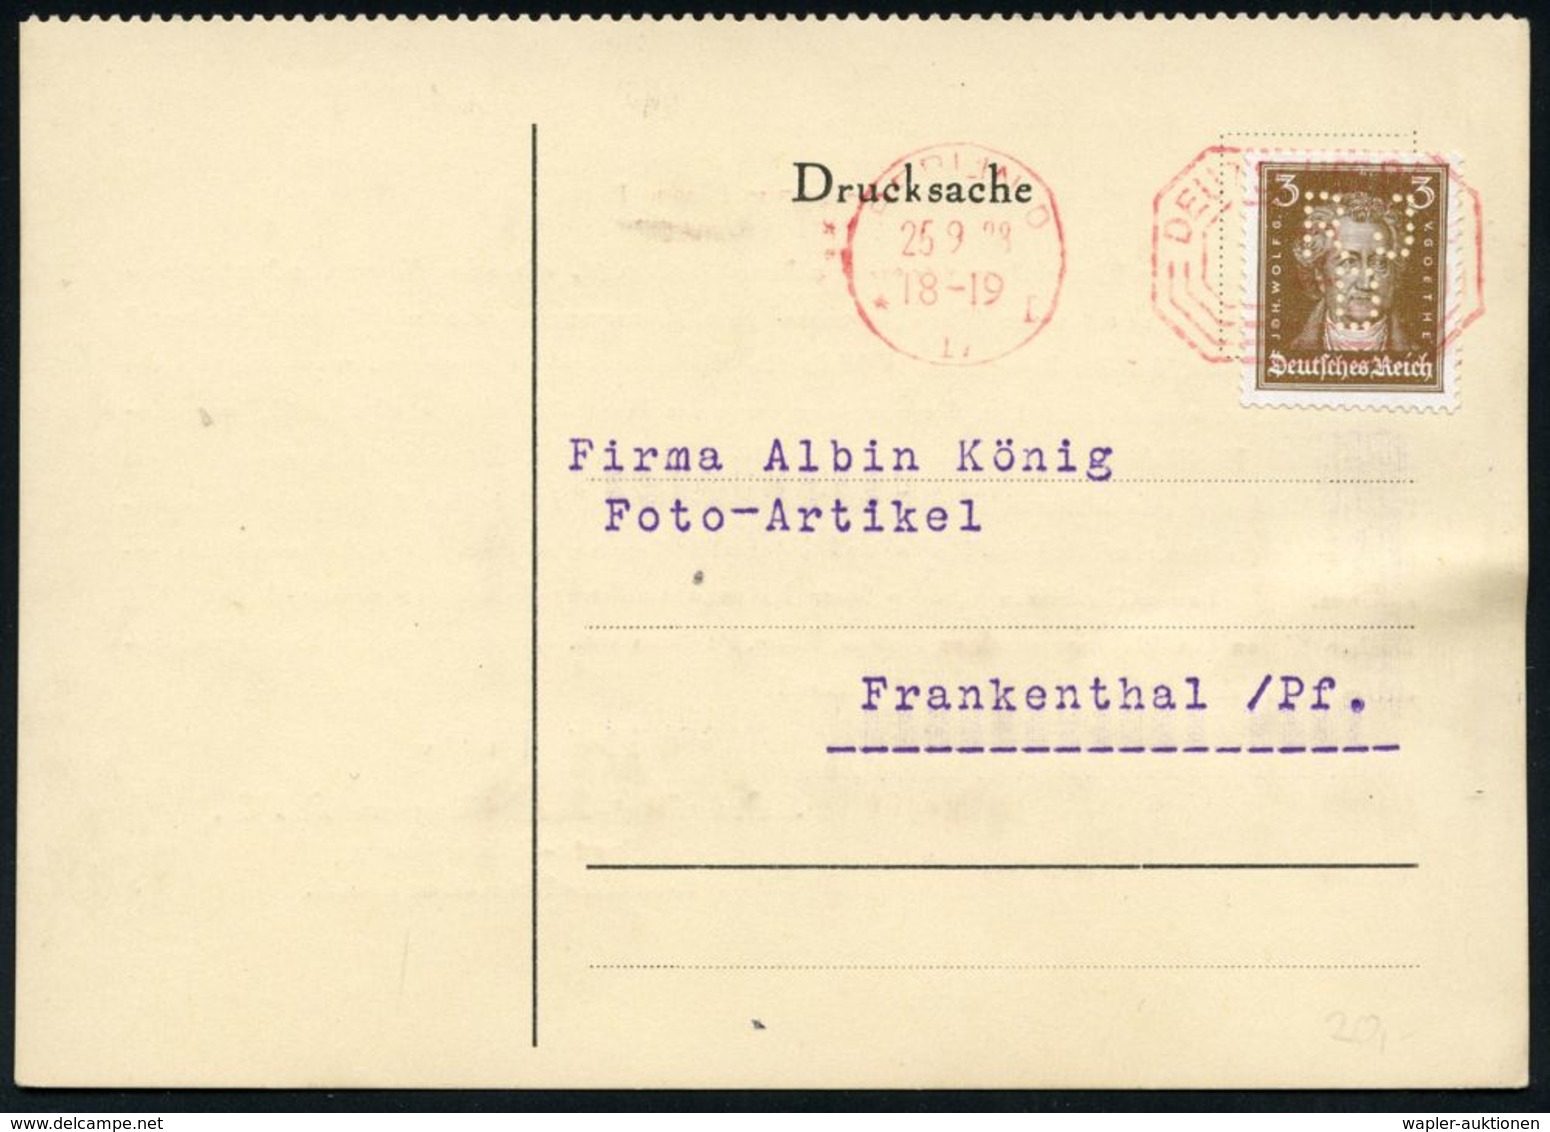 CHEMIE / PRODUKTE / CHEMISCHE INDUSTRIE : BERLIN O/ * 17 I/ DEUTSCHES REICH 1928 (25.9.) PFS 2 Pf. Achteck Als Entwertun - Chimie